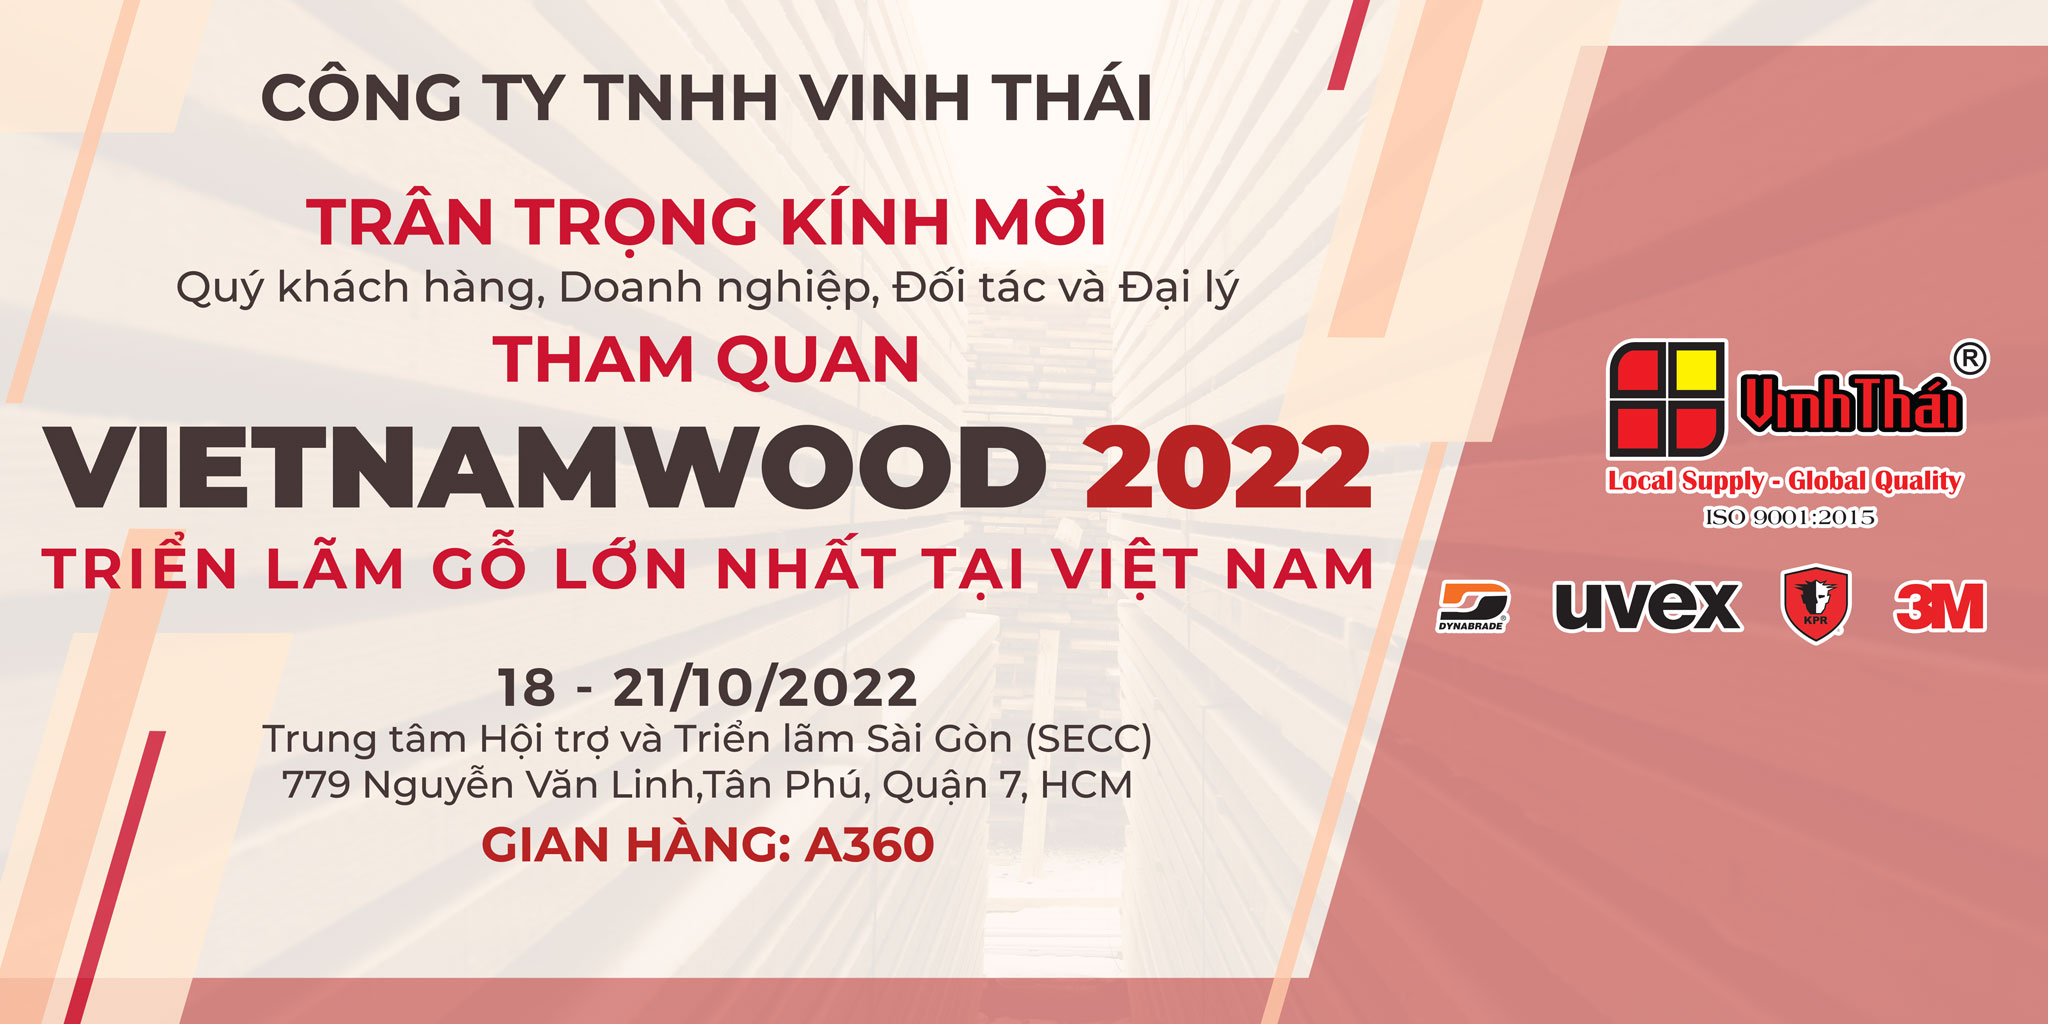 THƯ MỜI THAM QUAN TRIỂN LÃM VIETNAMWOOD 2022